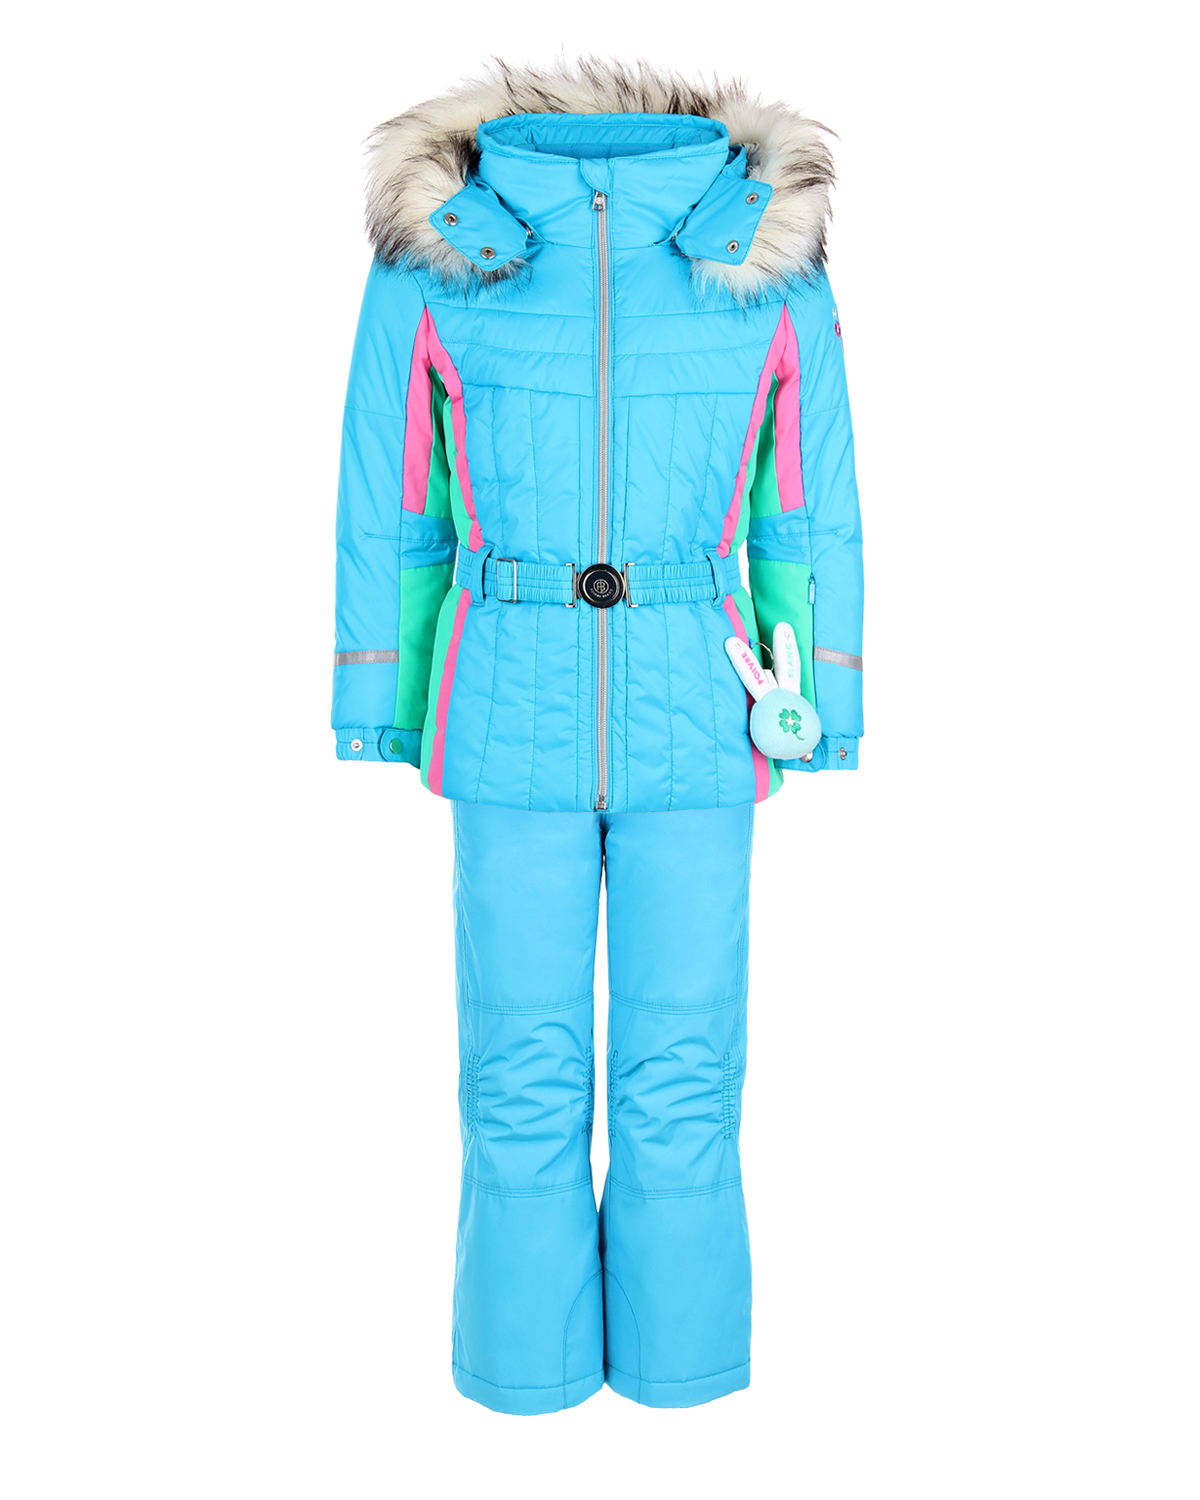 Комплект, куртка и полукомбиезон, голубой с вышивкой Poivre Blanc детский